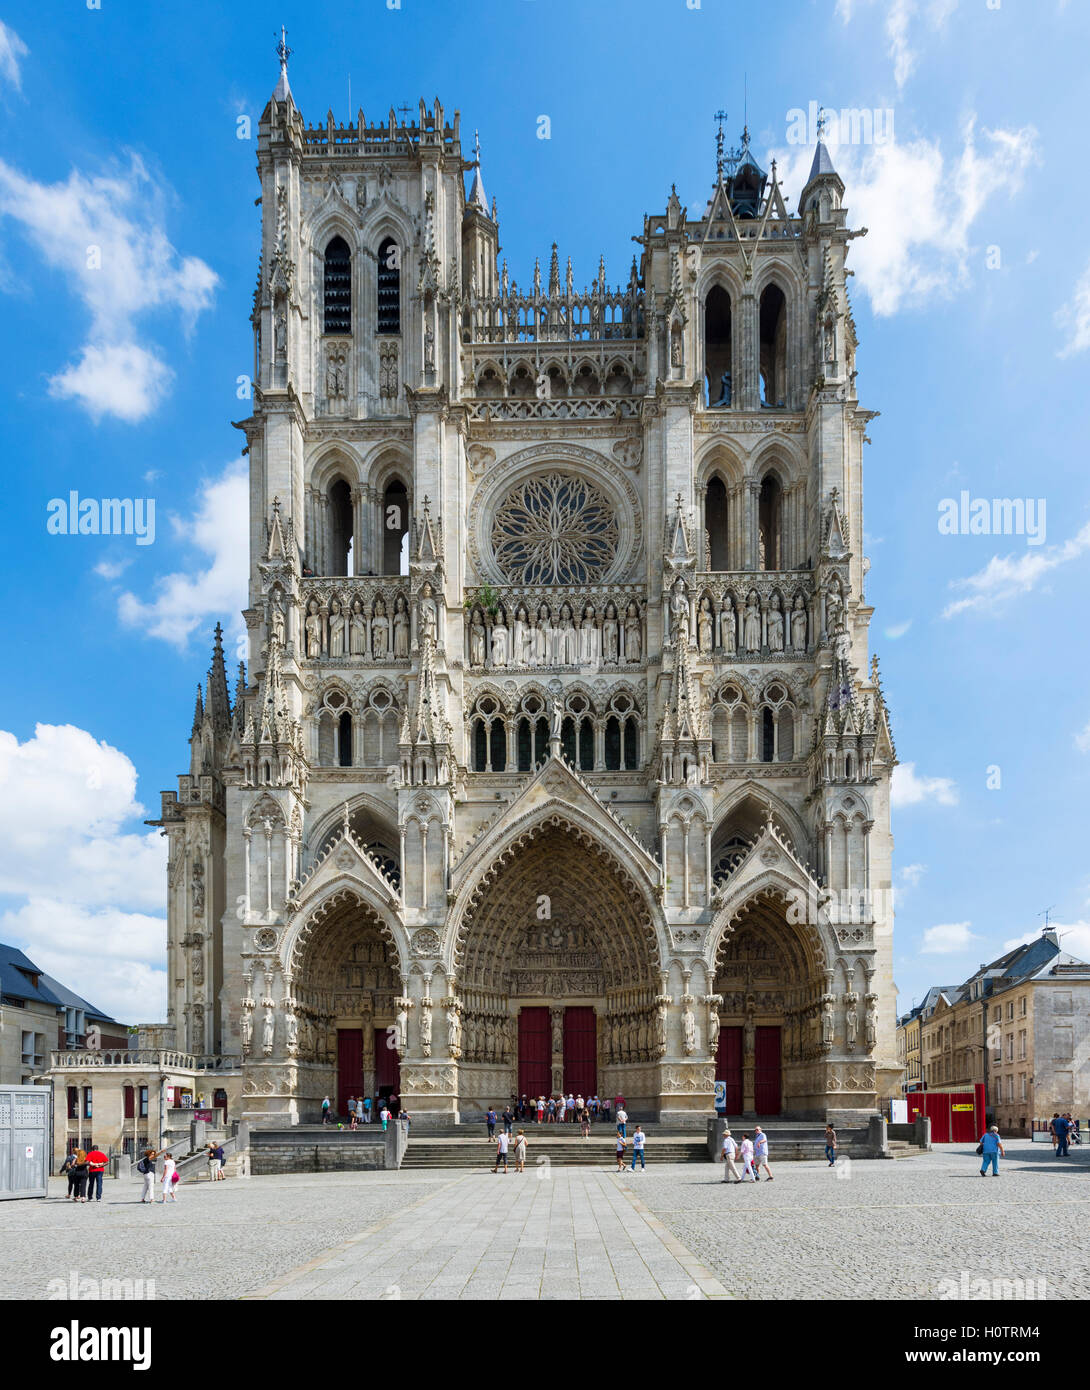 Il fronte ovest della cattedrale di Amiens (Cathédrale Notre Dame d'Amiens), Amiens, Piccardia, Francia Foto Stock